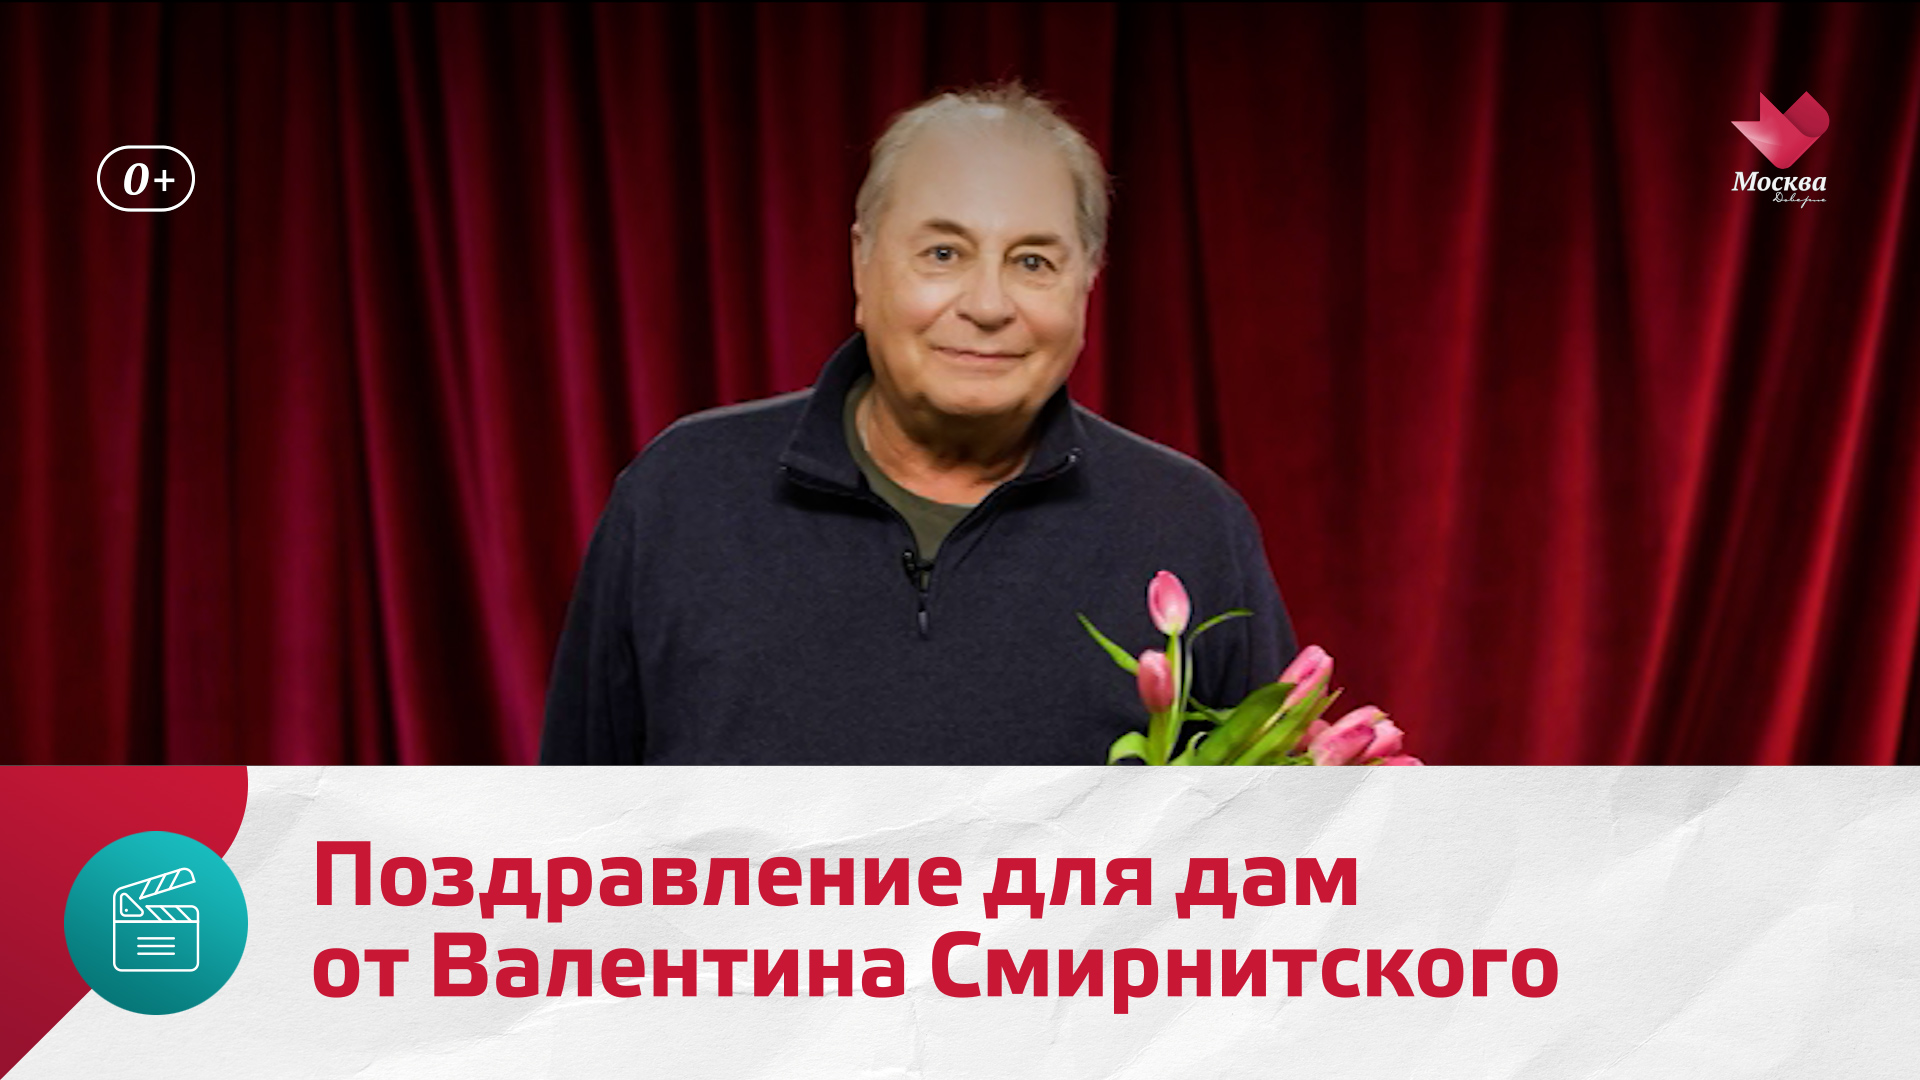 Поздравление для дам от Валентина Смирнитского — Москва Доверие